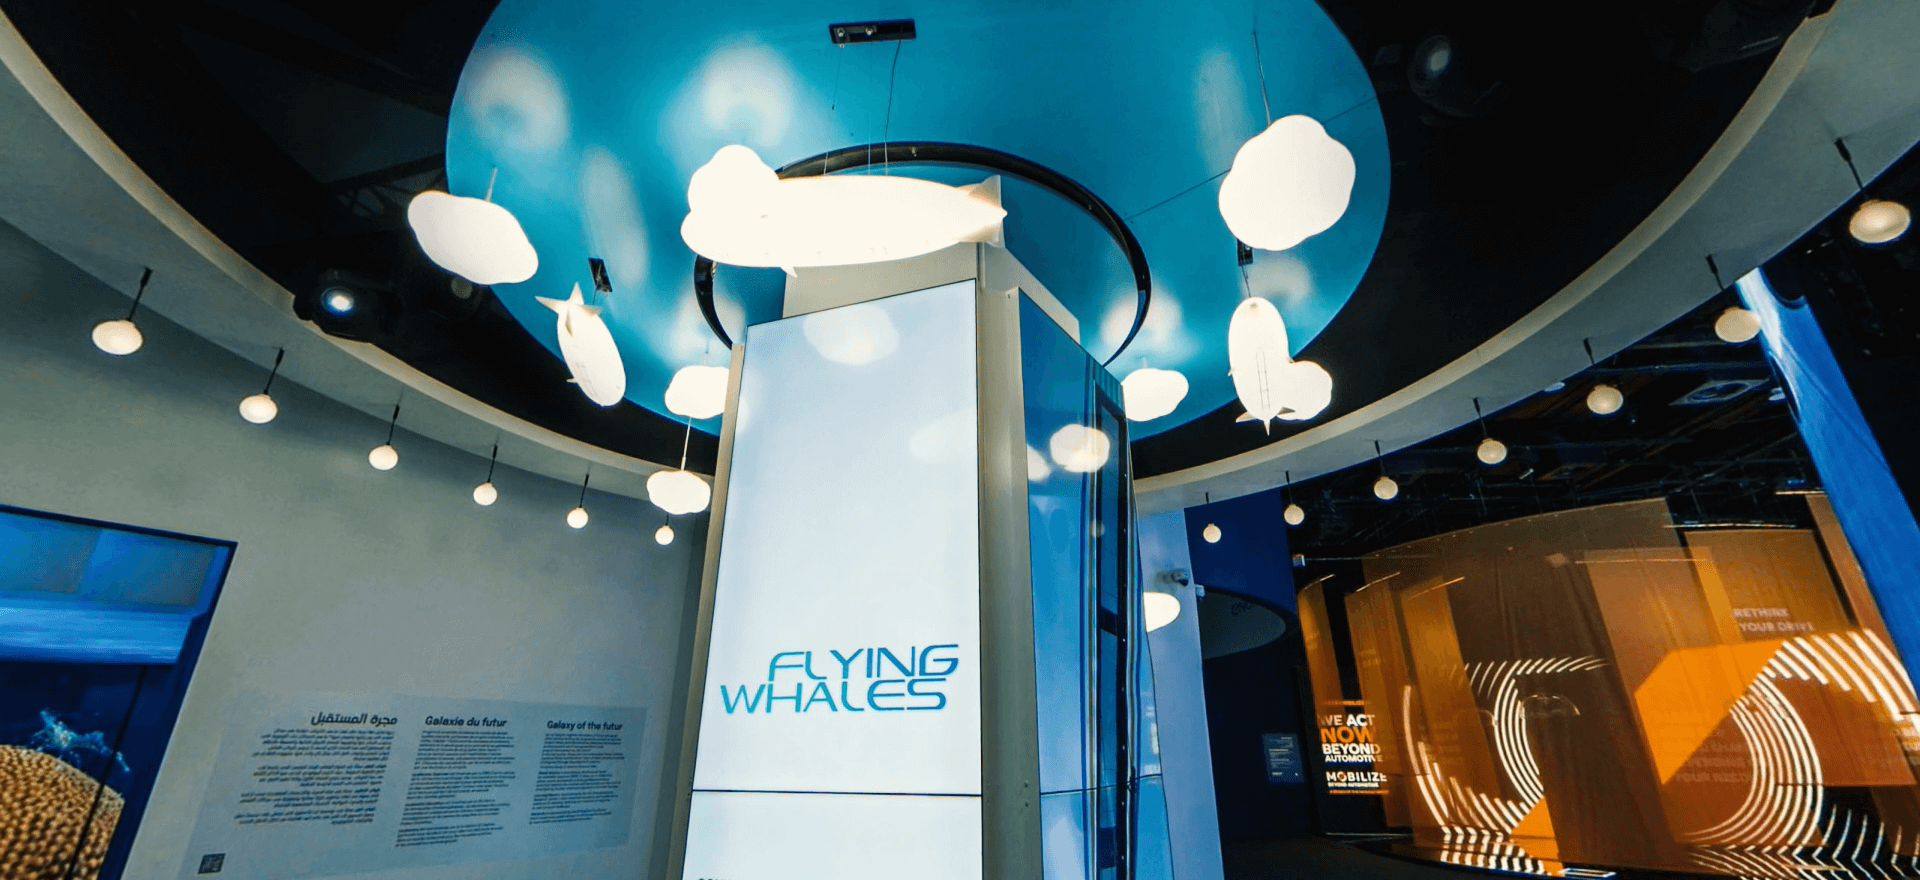 Aménagement d'espace - Flying Whales - Exposition Universelle de Dubaï - expertise agence communication Kardinal T Toulouse Paris